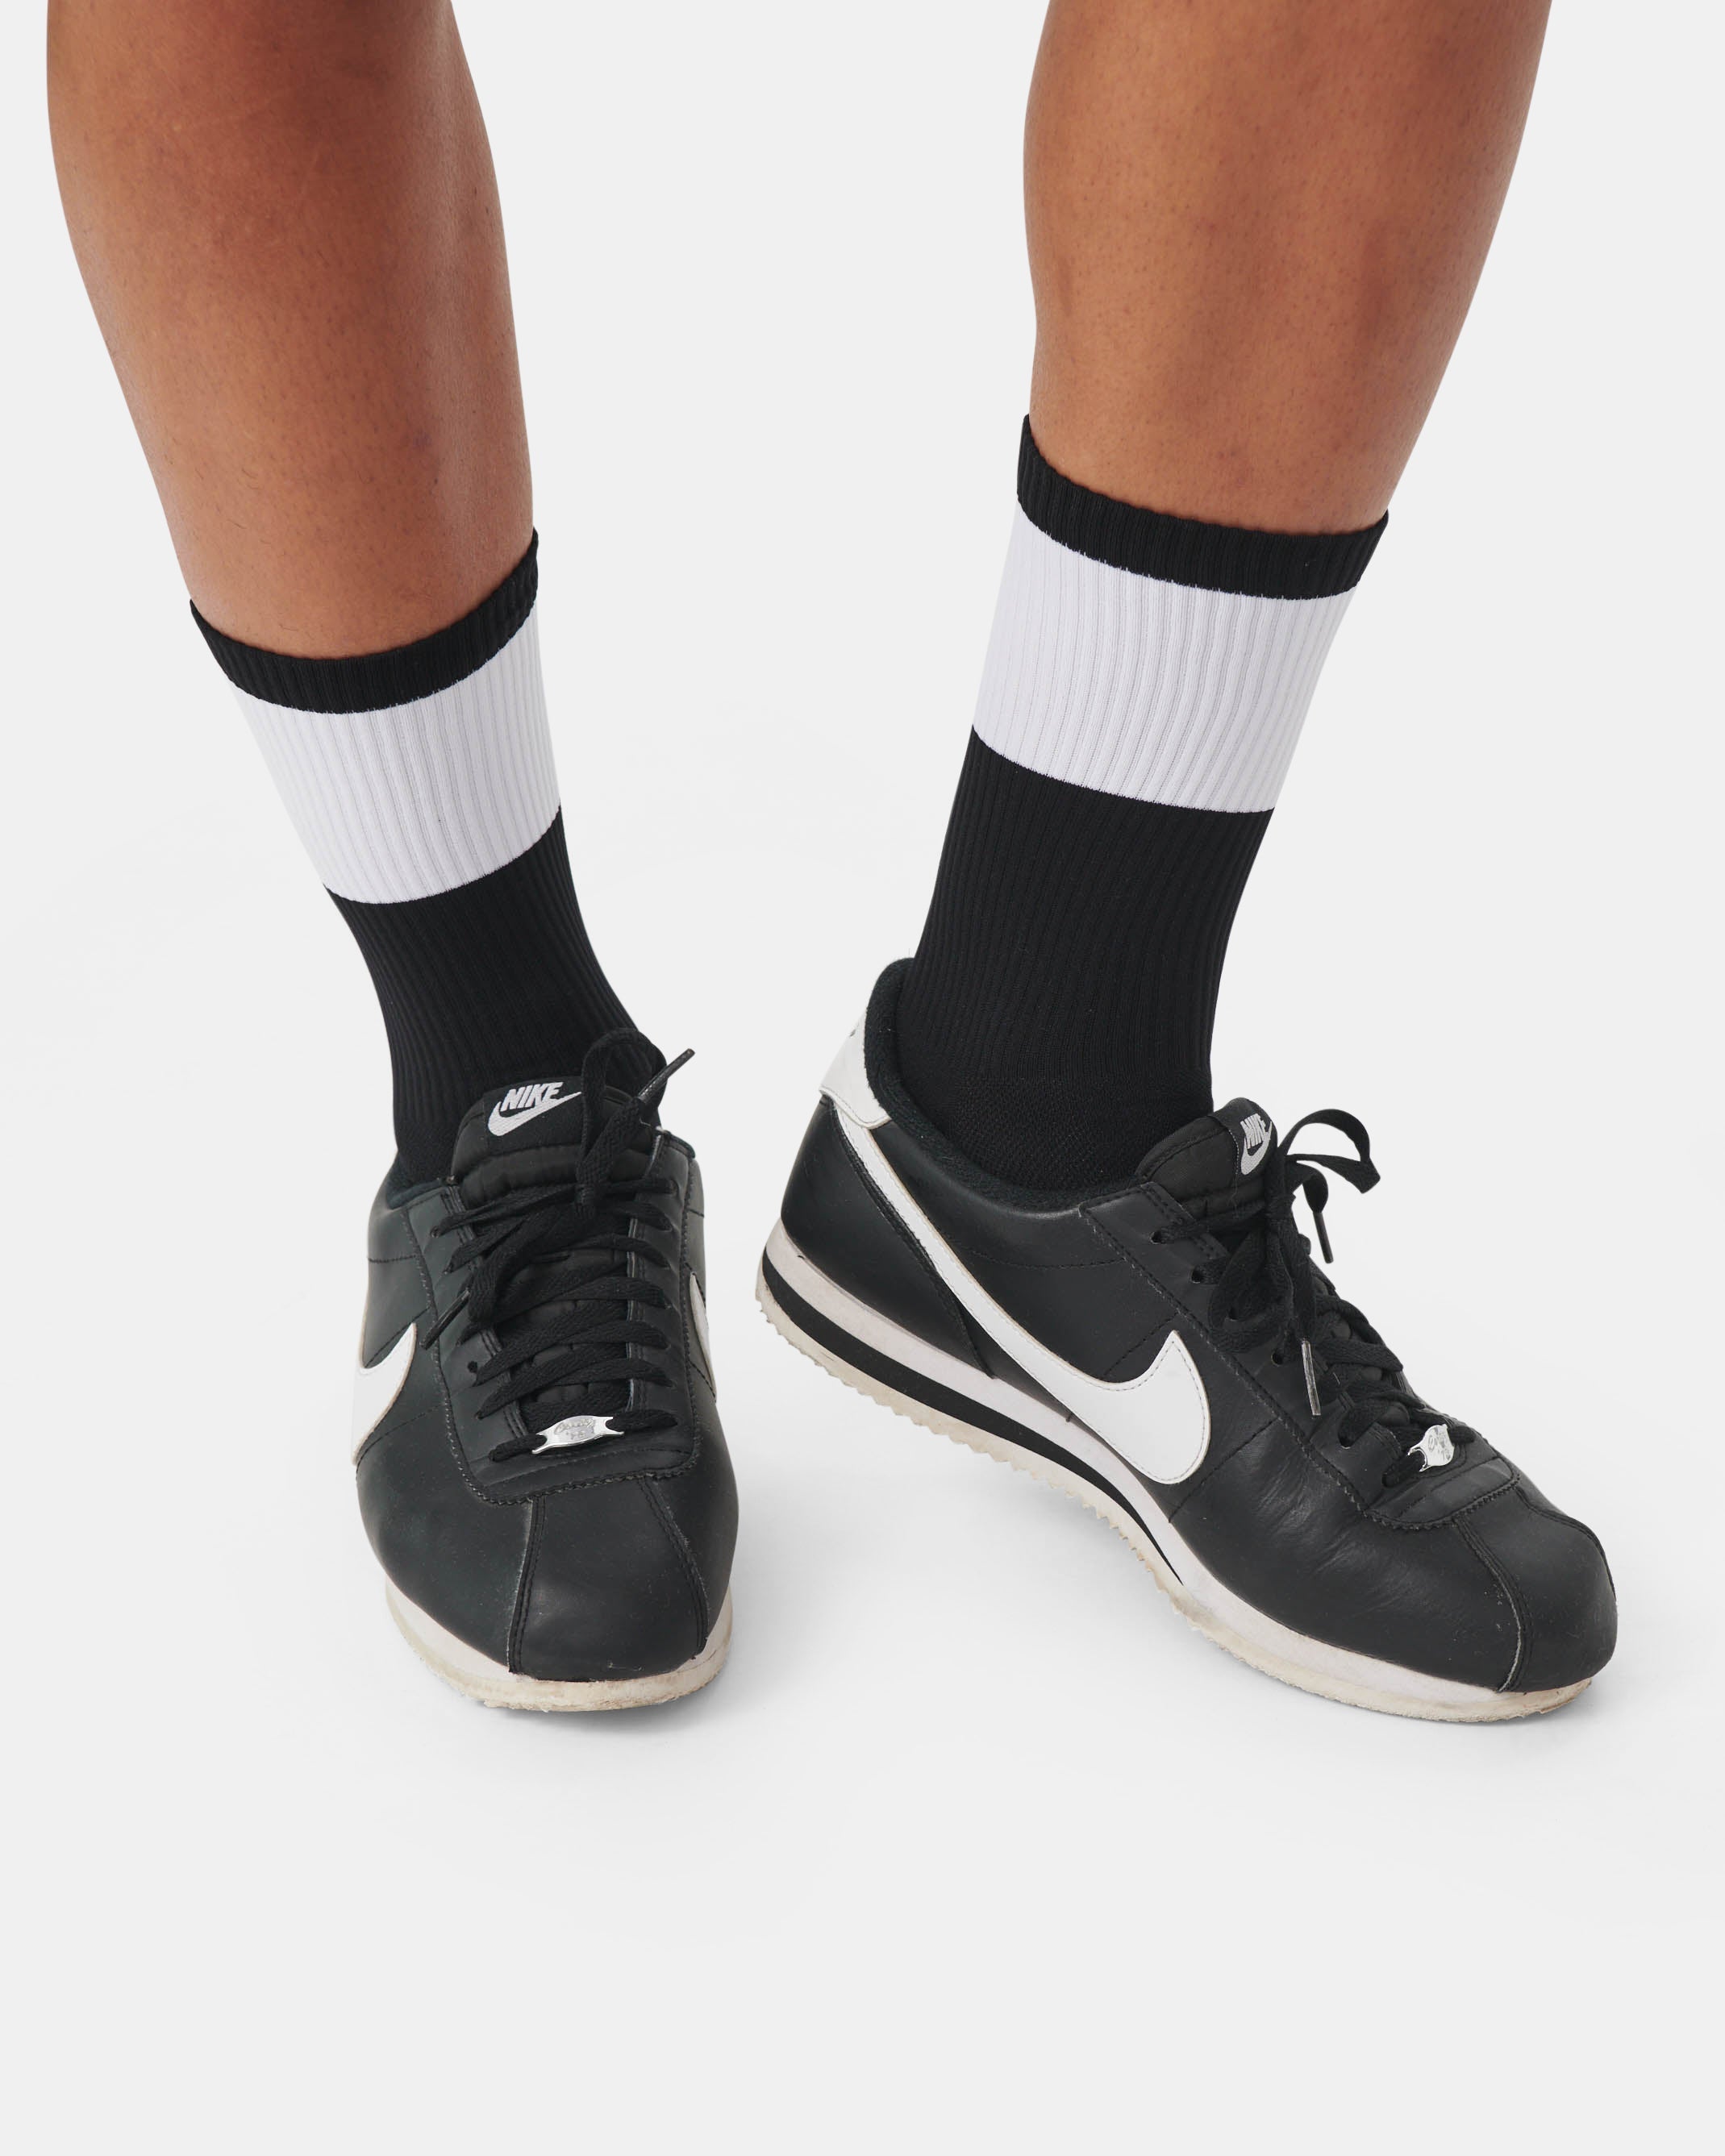 Performance Socks - Black - 3-pack